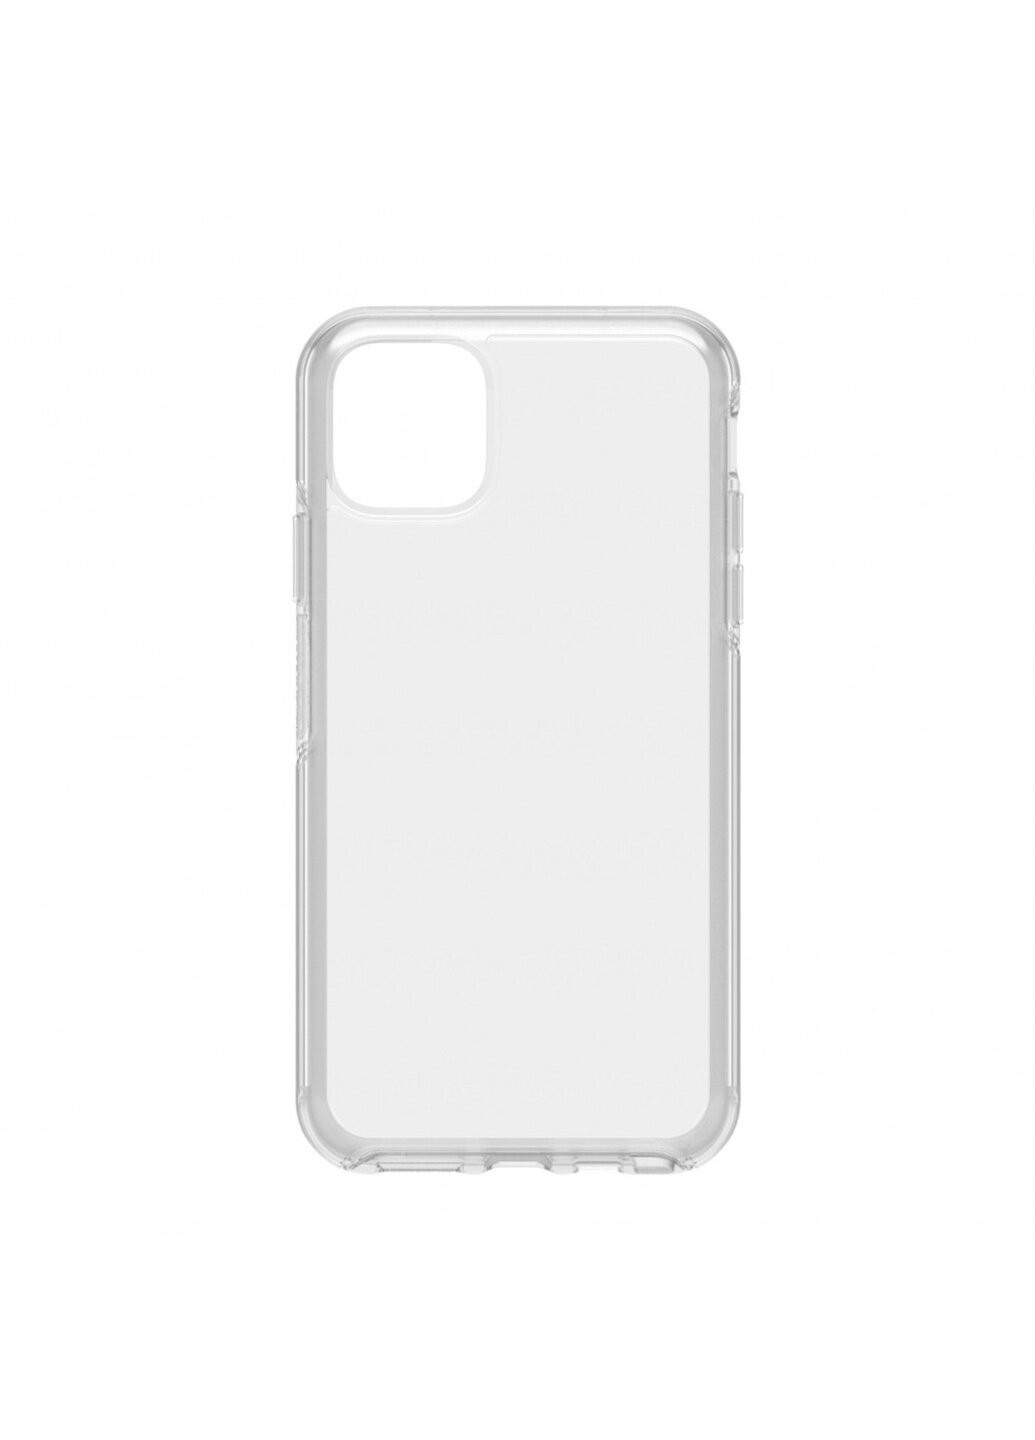 Чехол силиконовый плотный для iPhone 11 clear ARM белый